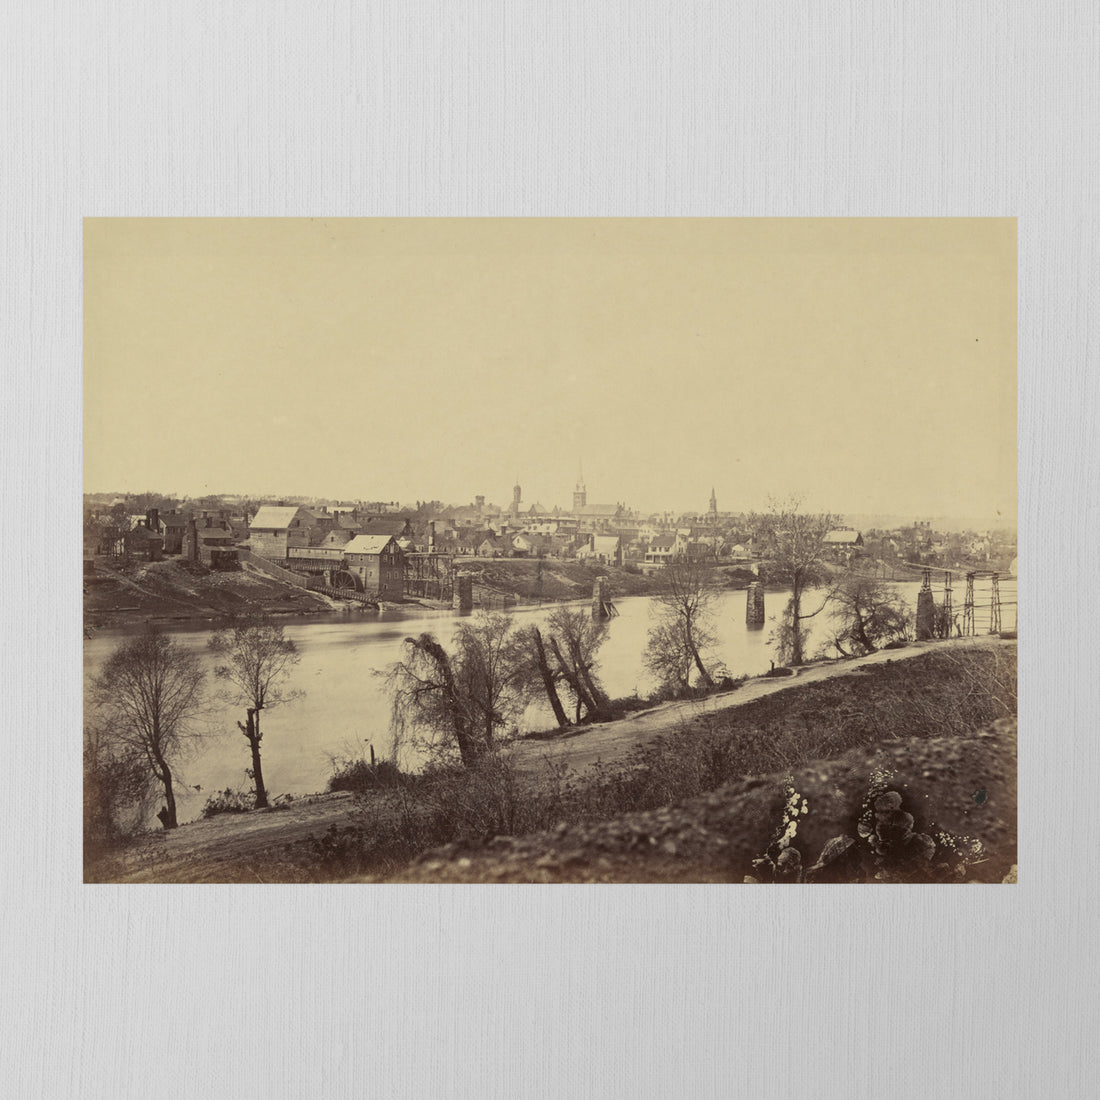 Fredericksburg, Virginia, 1863, Colorized